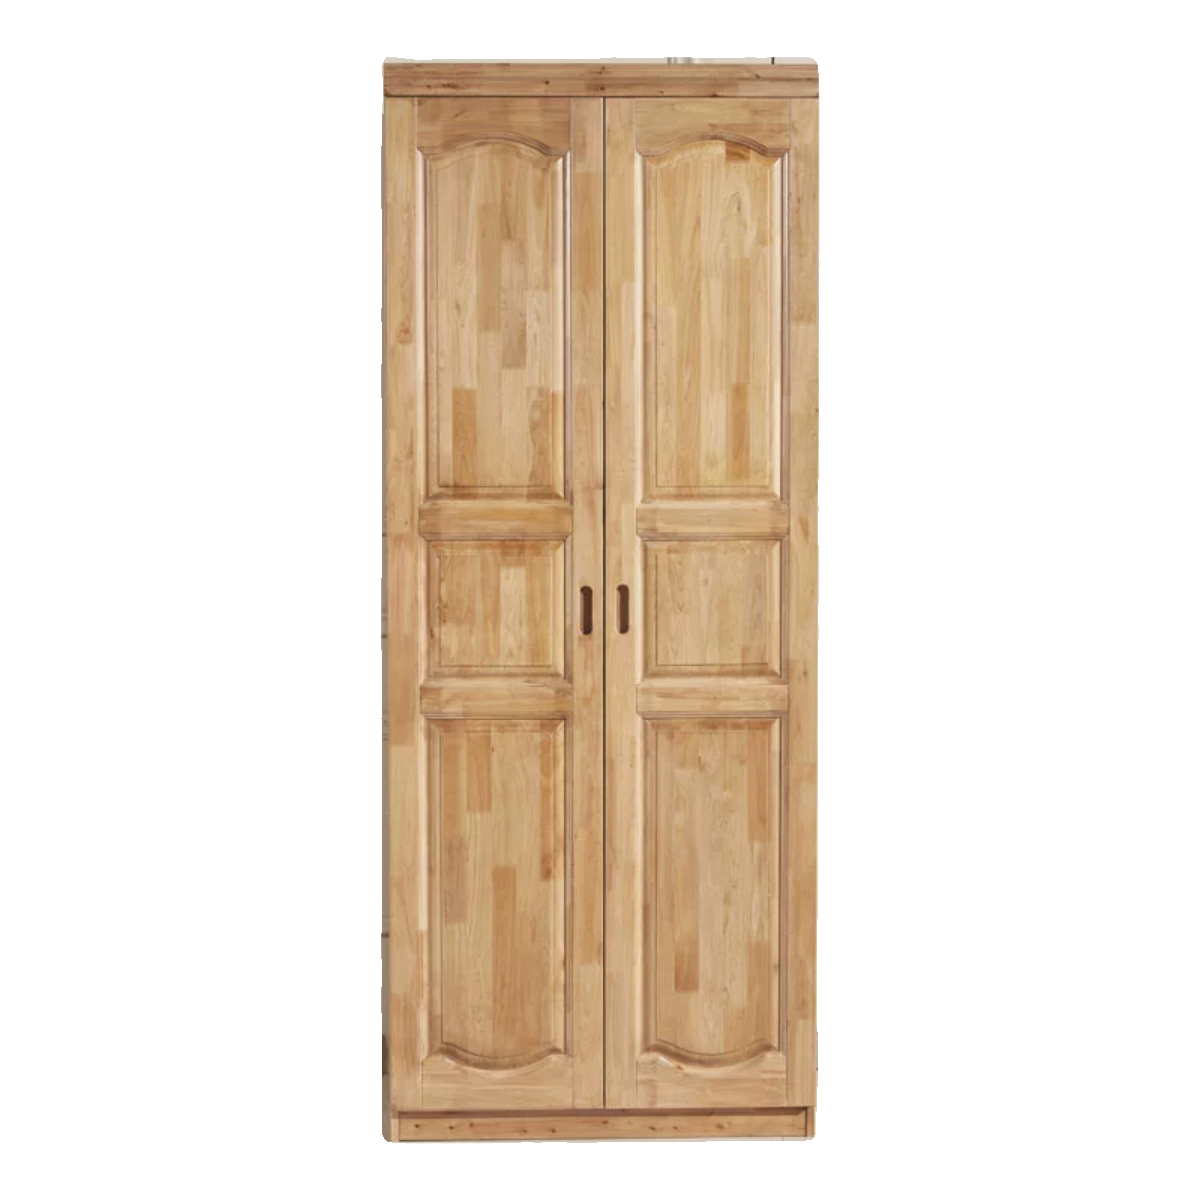 柏木衣柜两门全实木现代中式木质简约儿童储物衣橱卧室平开门柜子